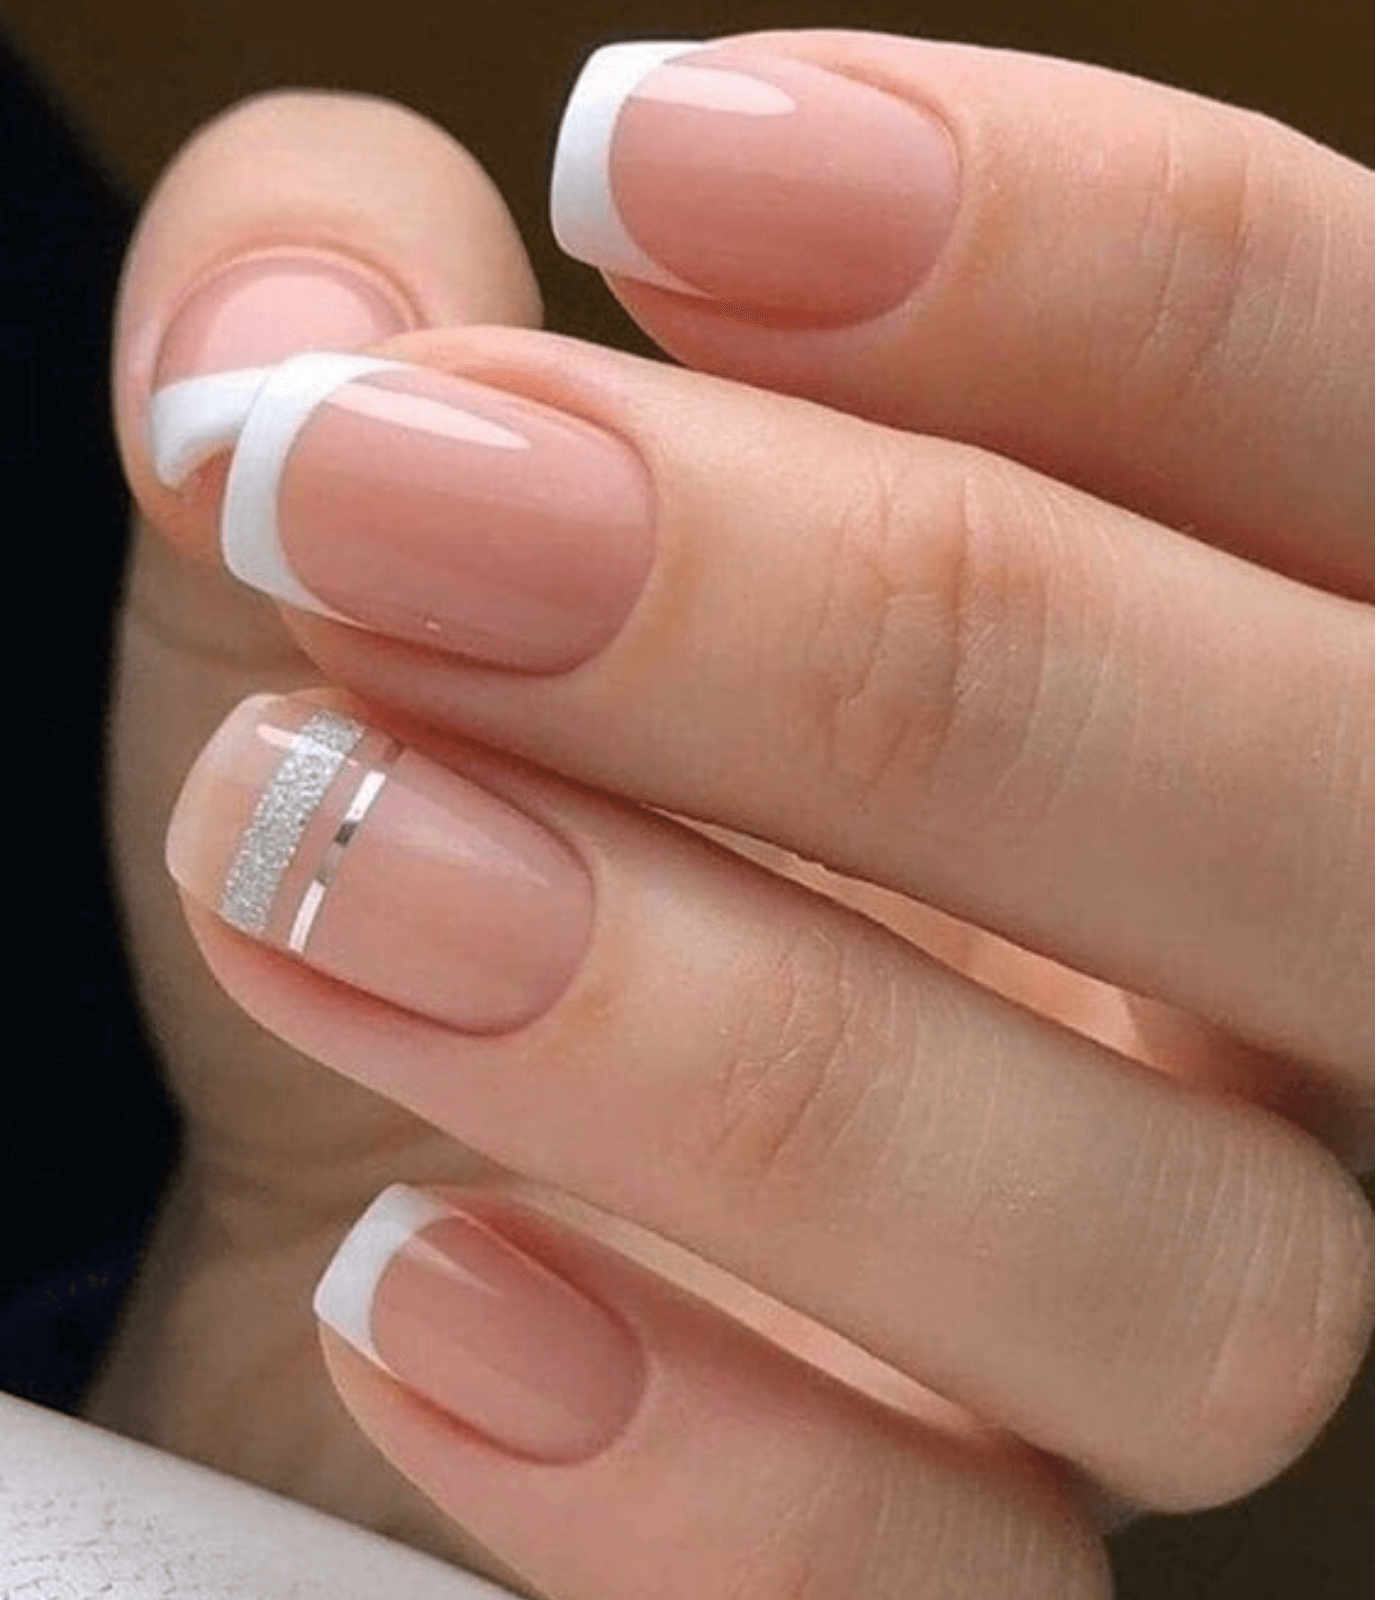 La French manicure sta tornando di moda